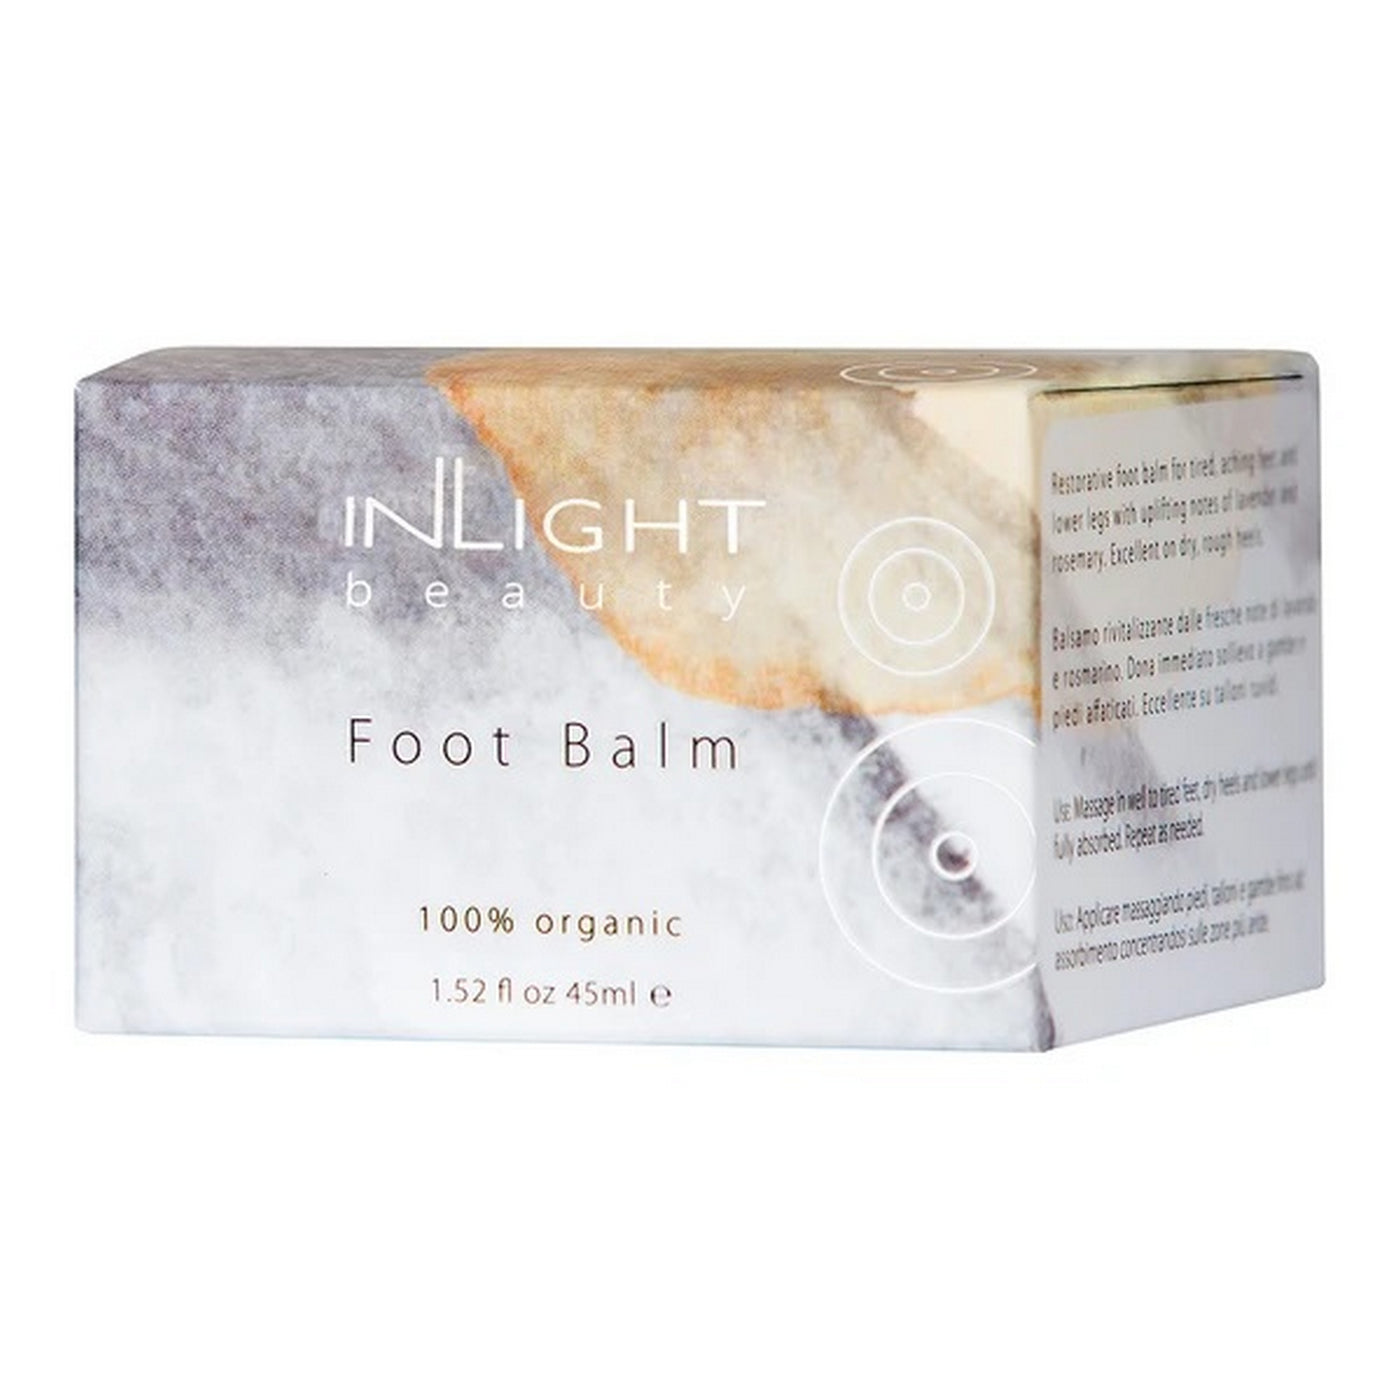 Inlight Foot Balm